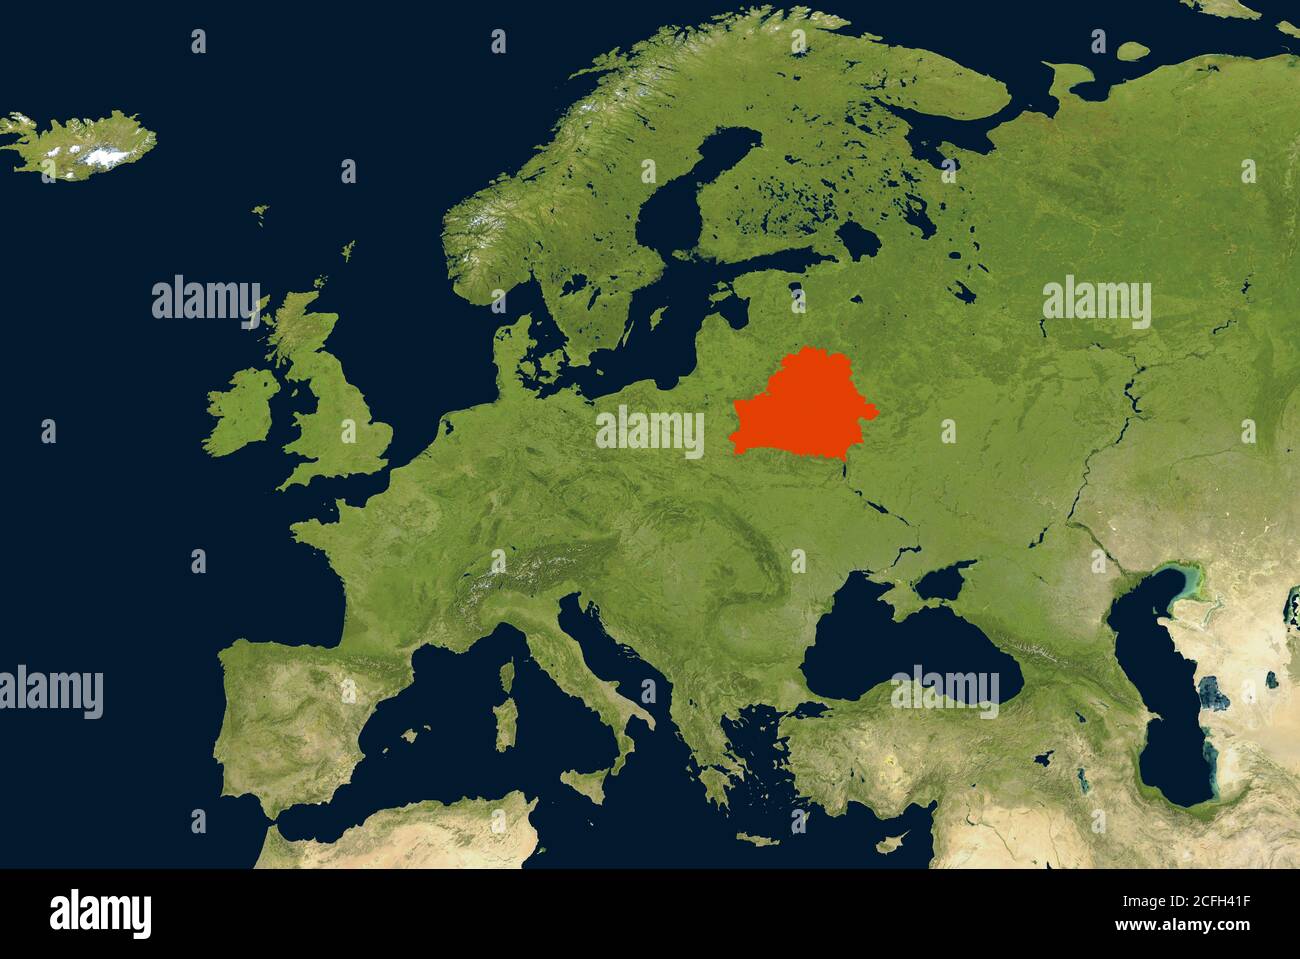 Bielorussia sulla mappa fisica dell'Europa, dettaglio della mappa geografica mondiale dalla foto satellitare globale. Immagine piatta della regione europea sulla Terra. Concetto di media news Foto Stock